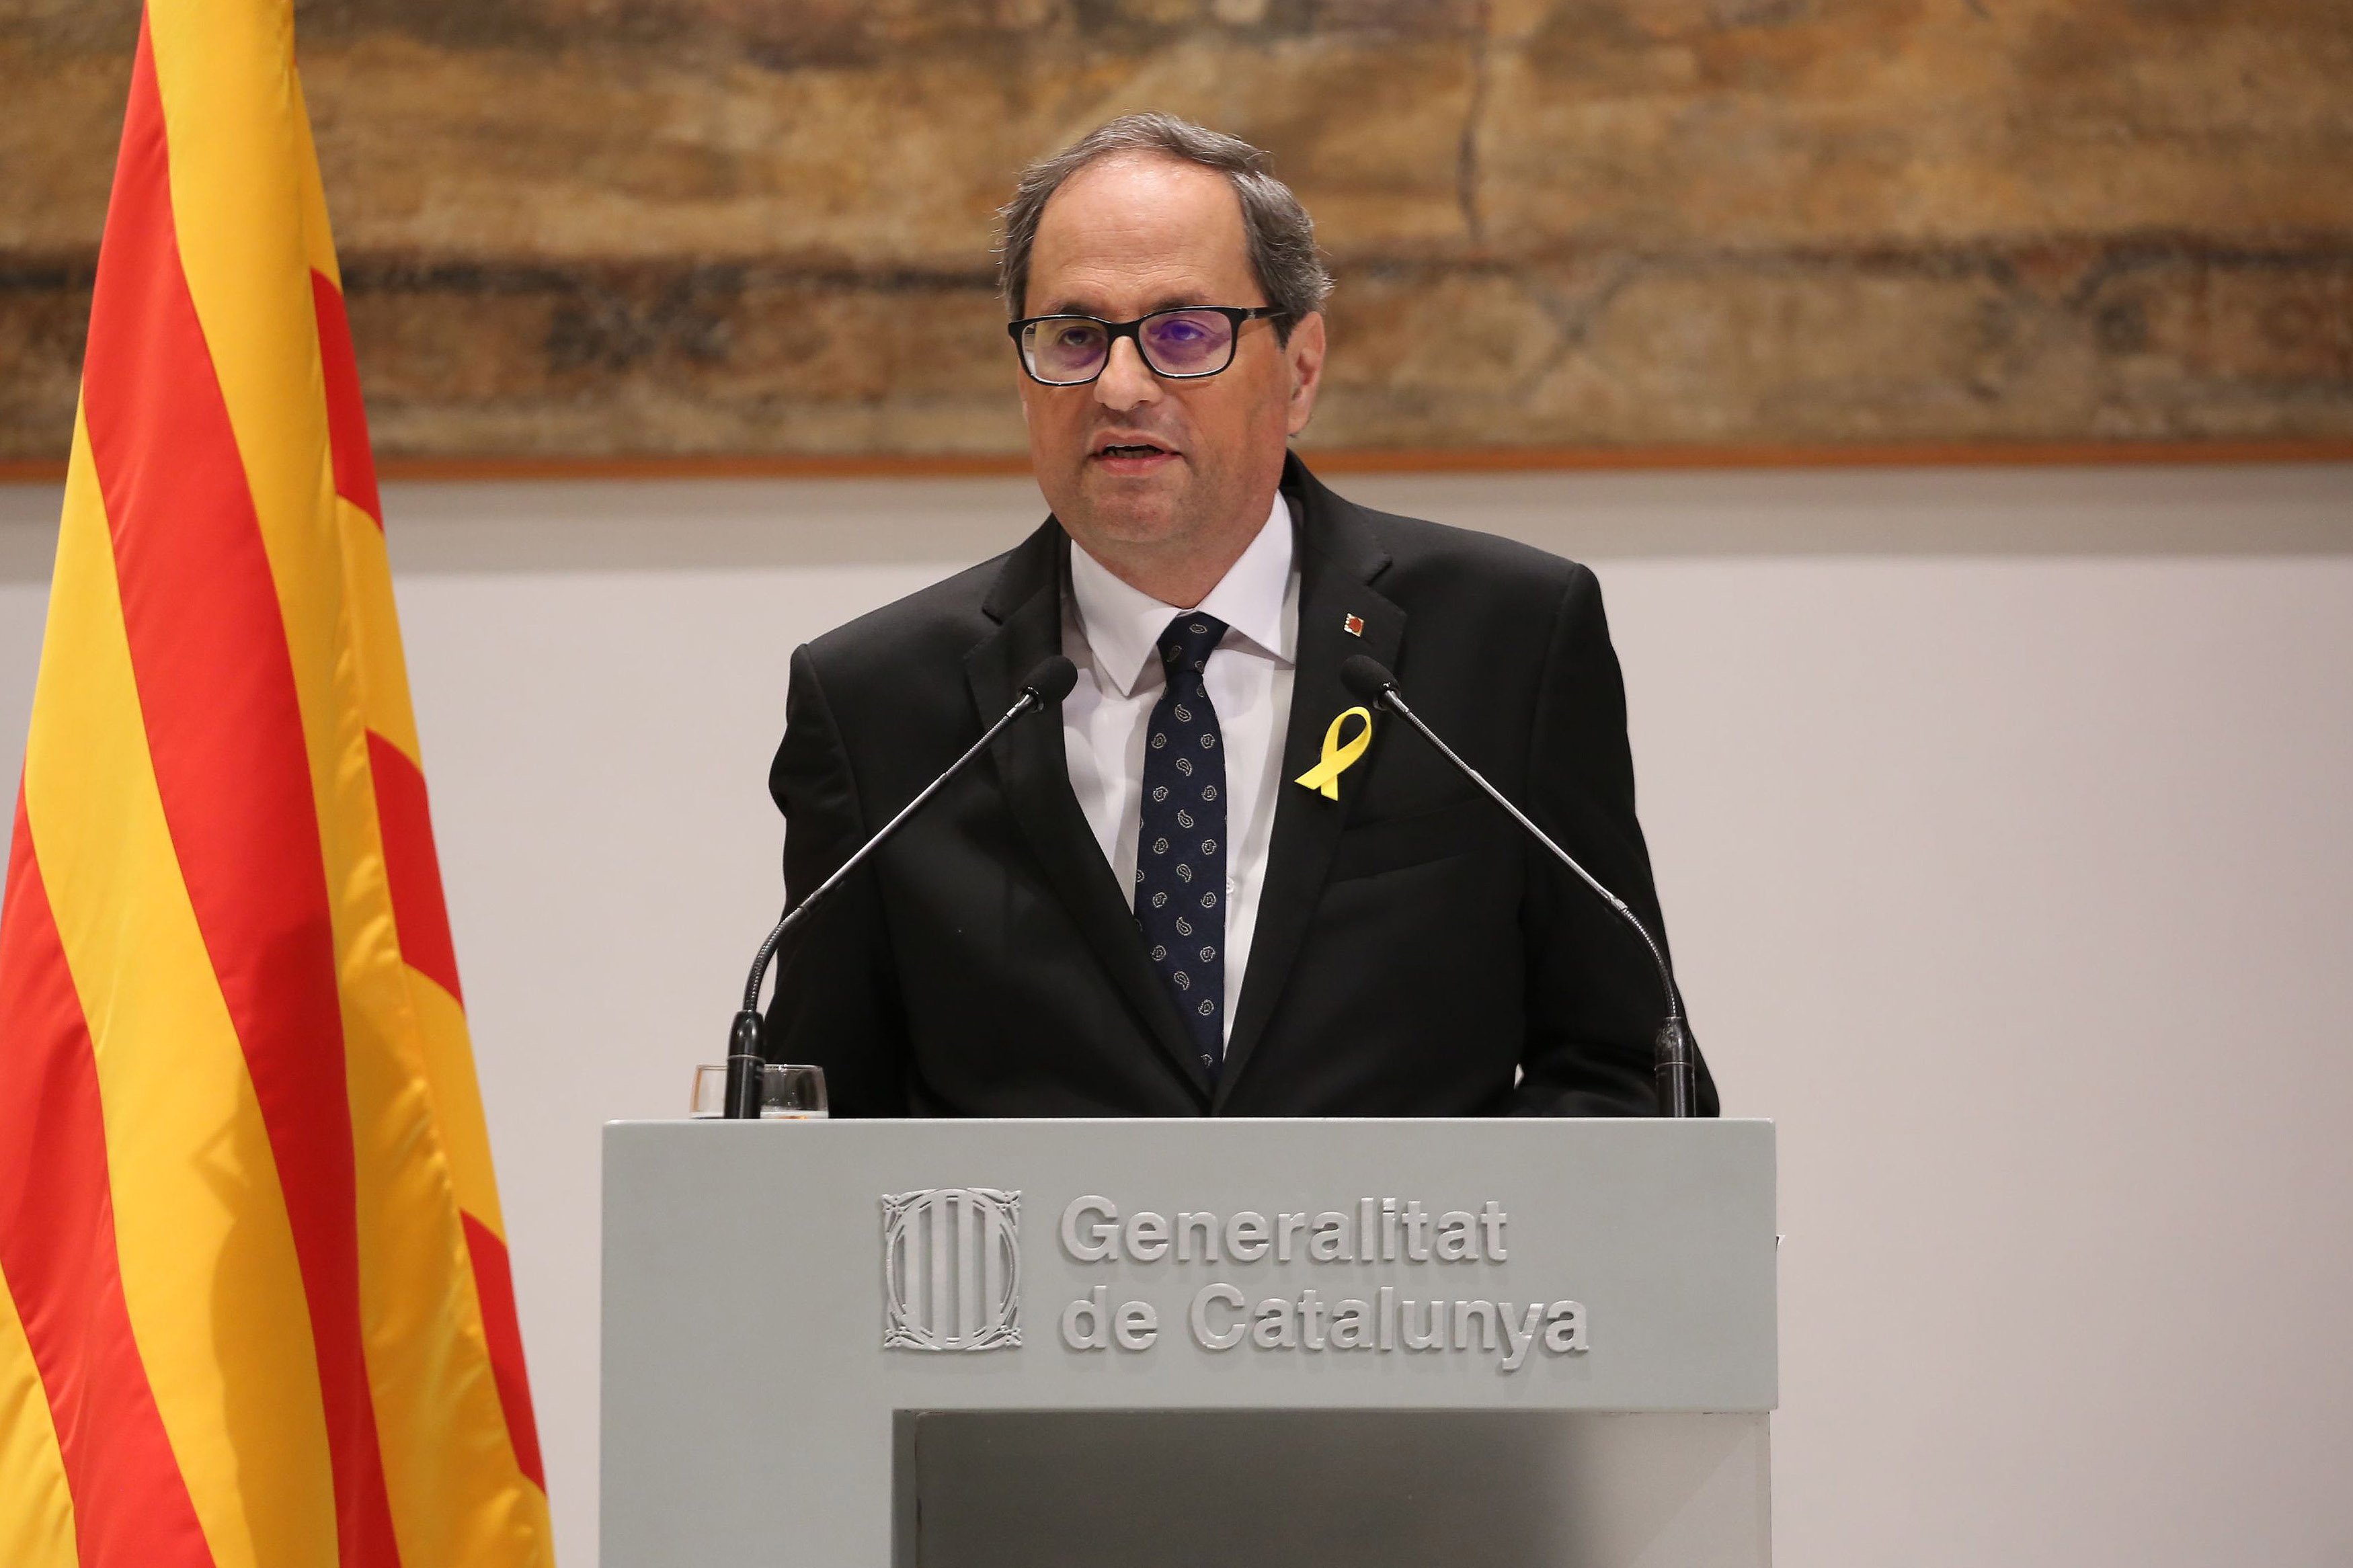 Torra inaugurará el Catalonia America Council en Washington esta semana